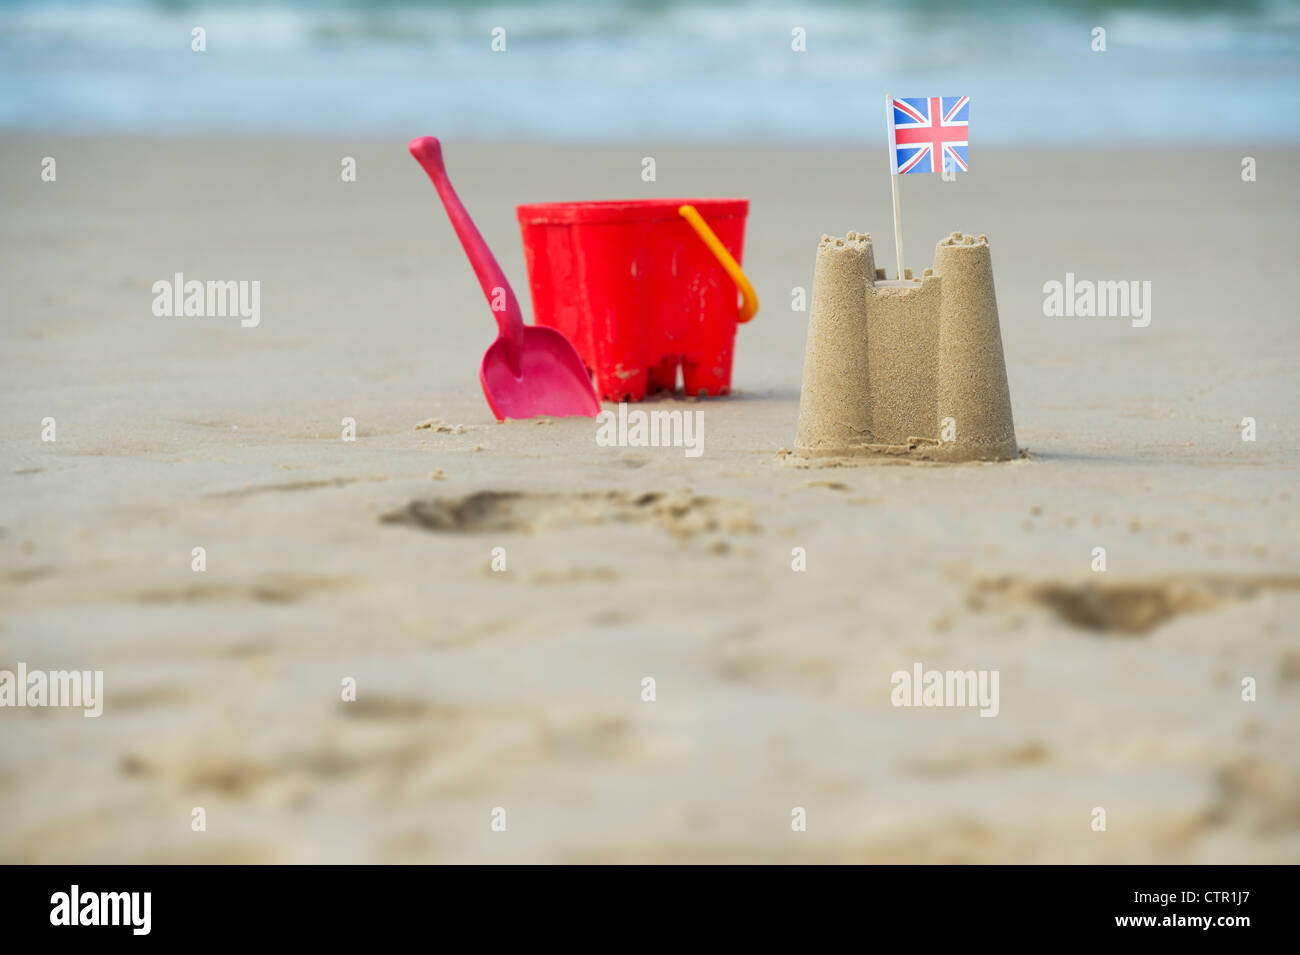 Union Jack flag in un castello di sabbia accanto a una benna childs e vanga su una spiaggia. Pozzetti accanto al mare. Norfolk, Inghilterra Foto Stock